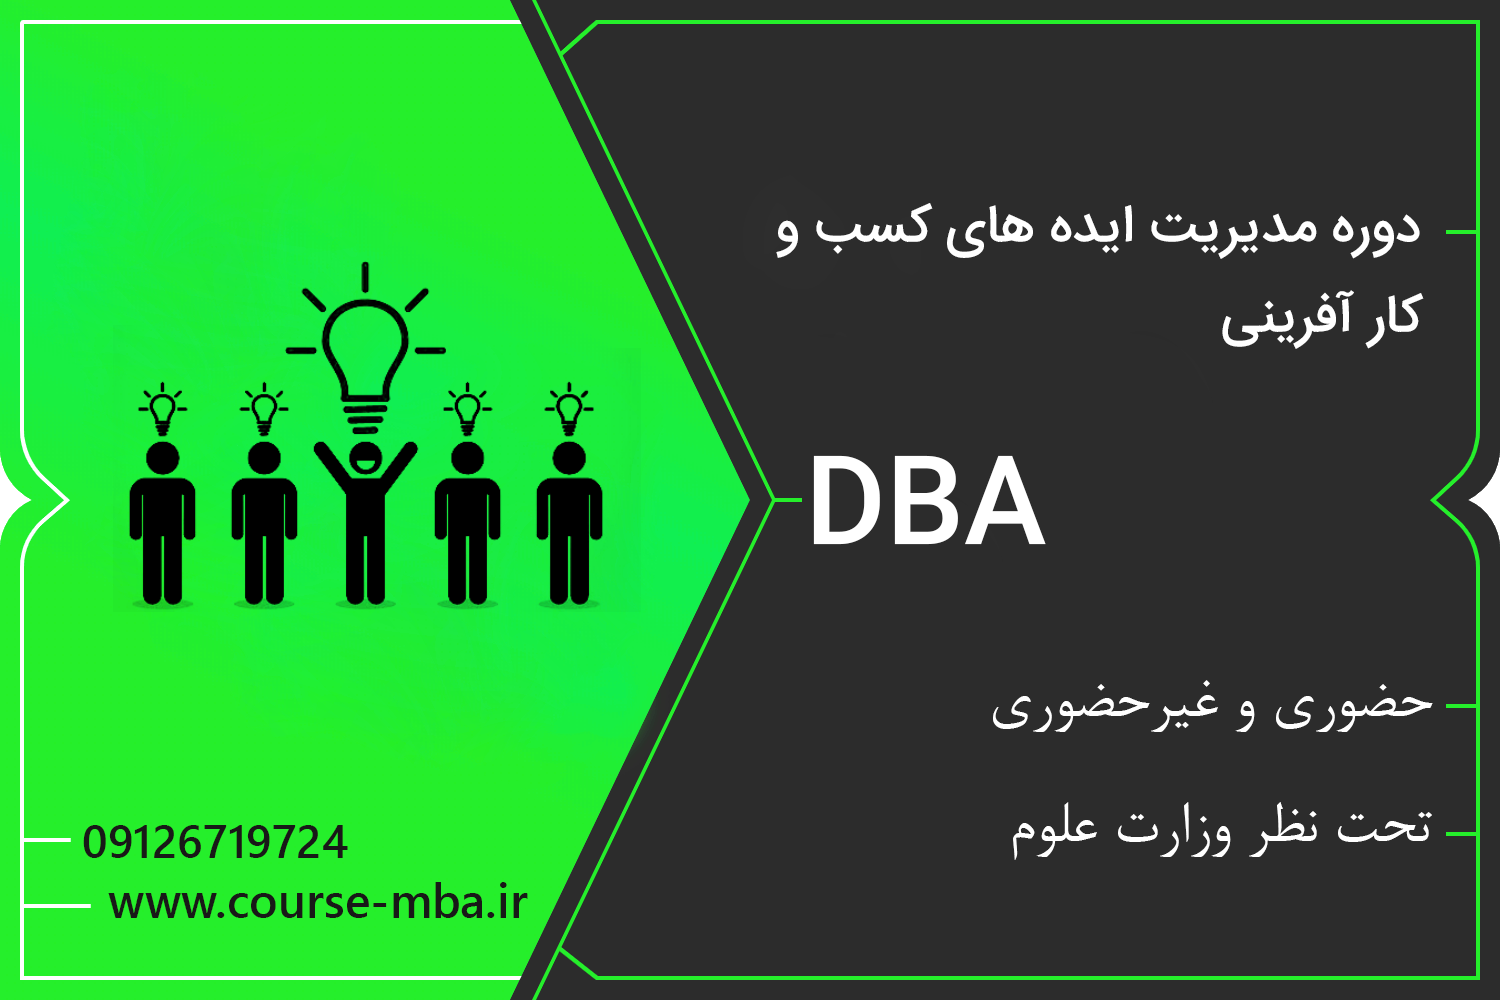 دوره DBA مدیریت ایده های کارآفرینی | مدرک DBA مدیریت ایده های کارآفرینی